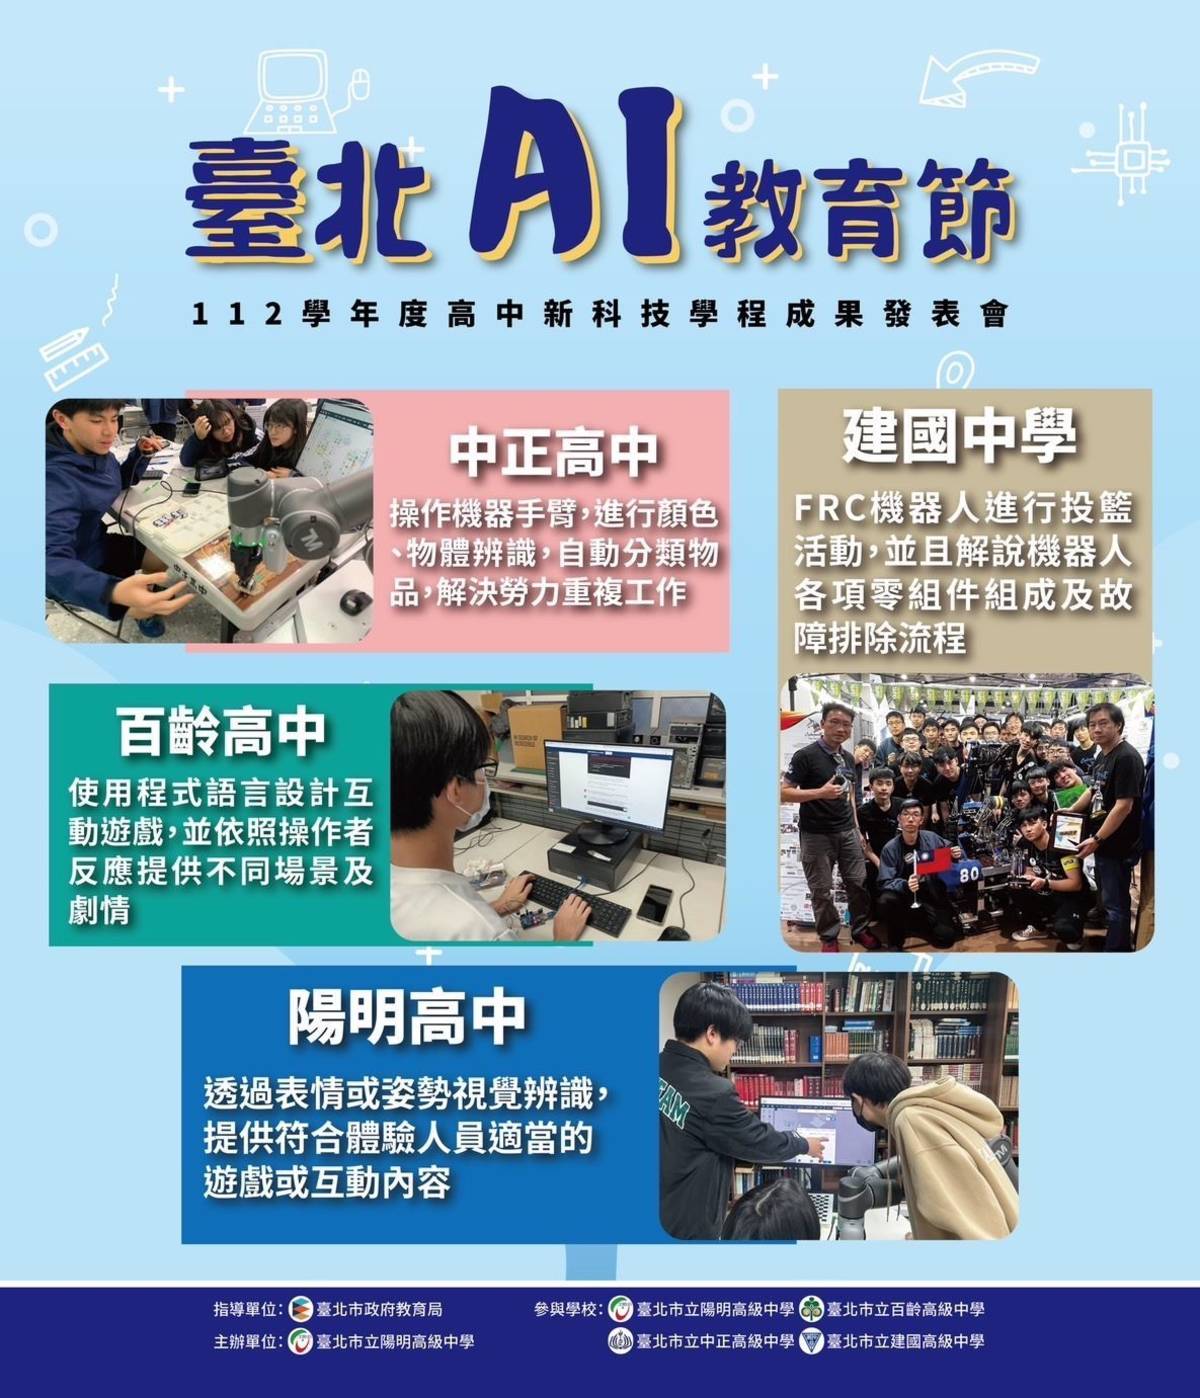 「臺北AI 教育節」由陽明高中、中正高中、百齡高中及建國中學分享學習成果